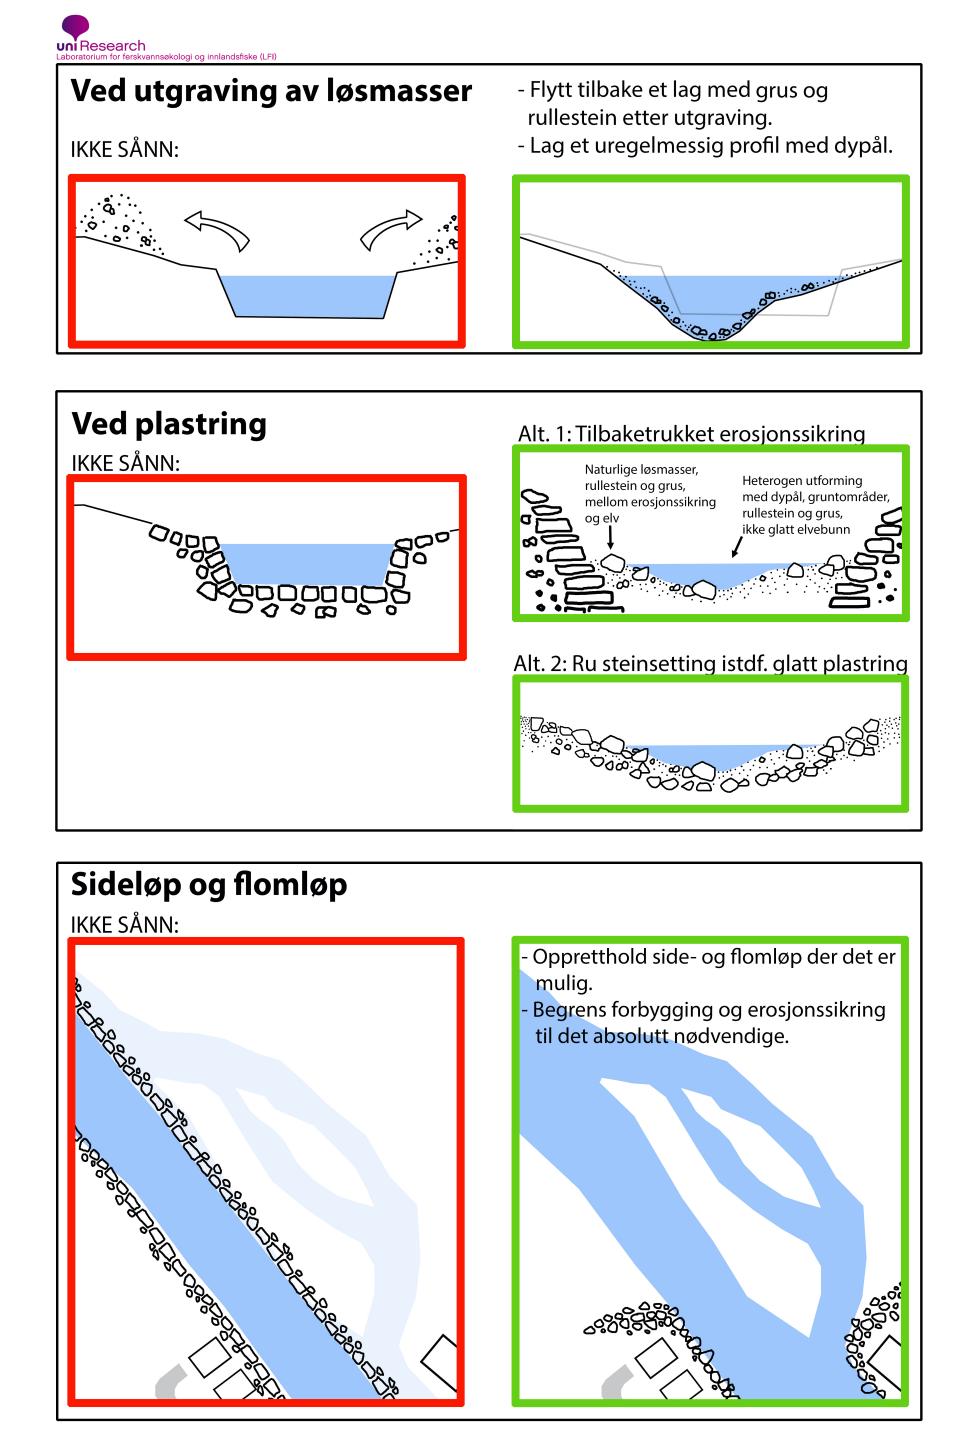 Anbefalt utforming av elver dersom det er behov for sikrings- og flomverntiltak. Illustrasjon: Ulrich Pulg.